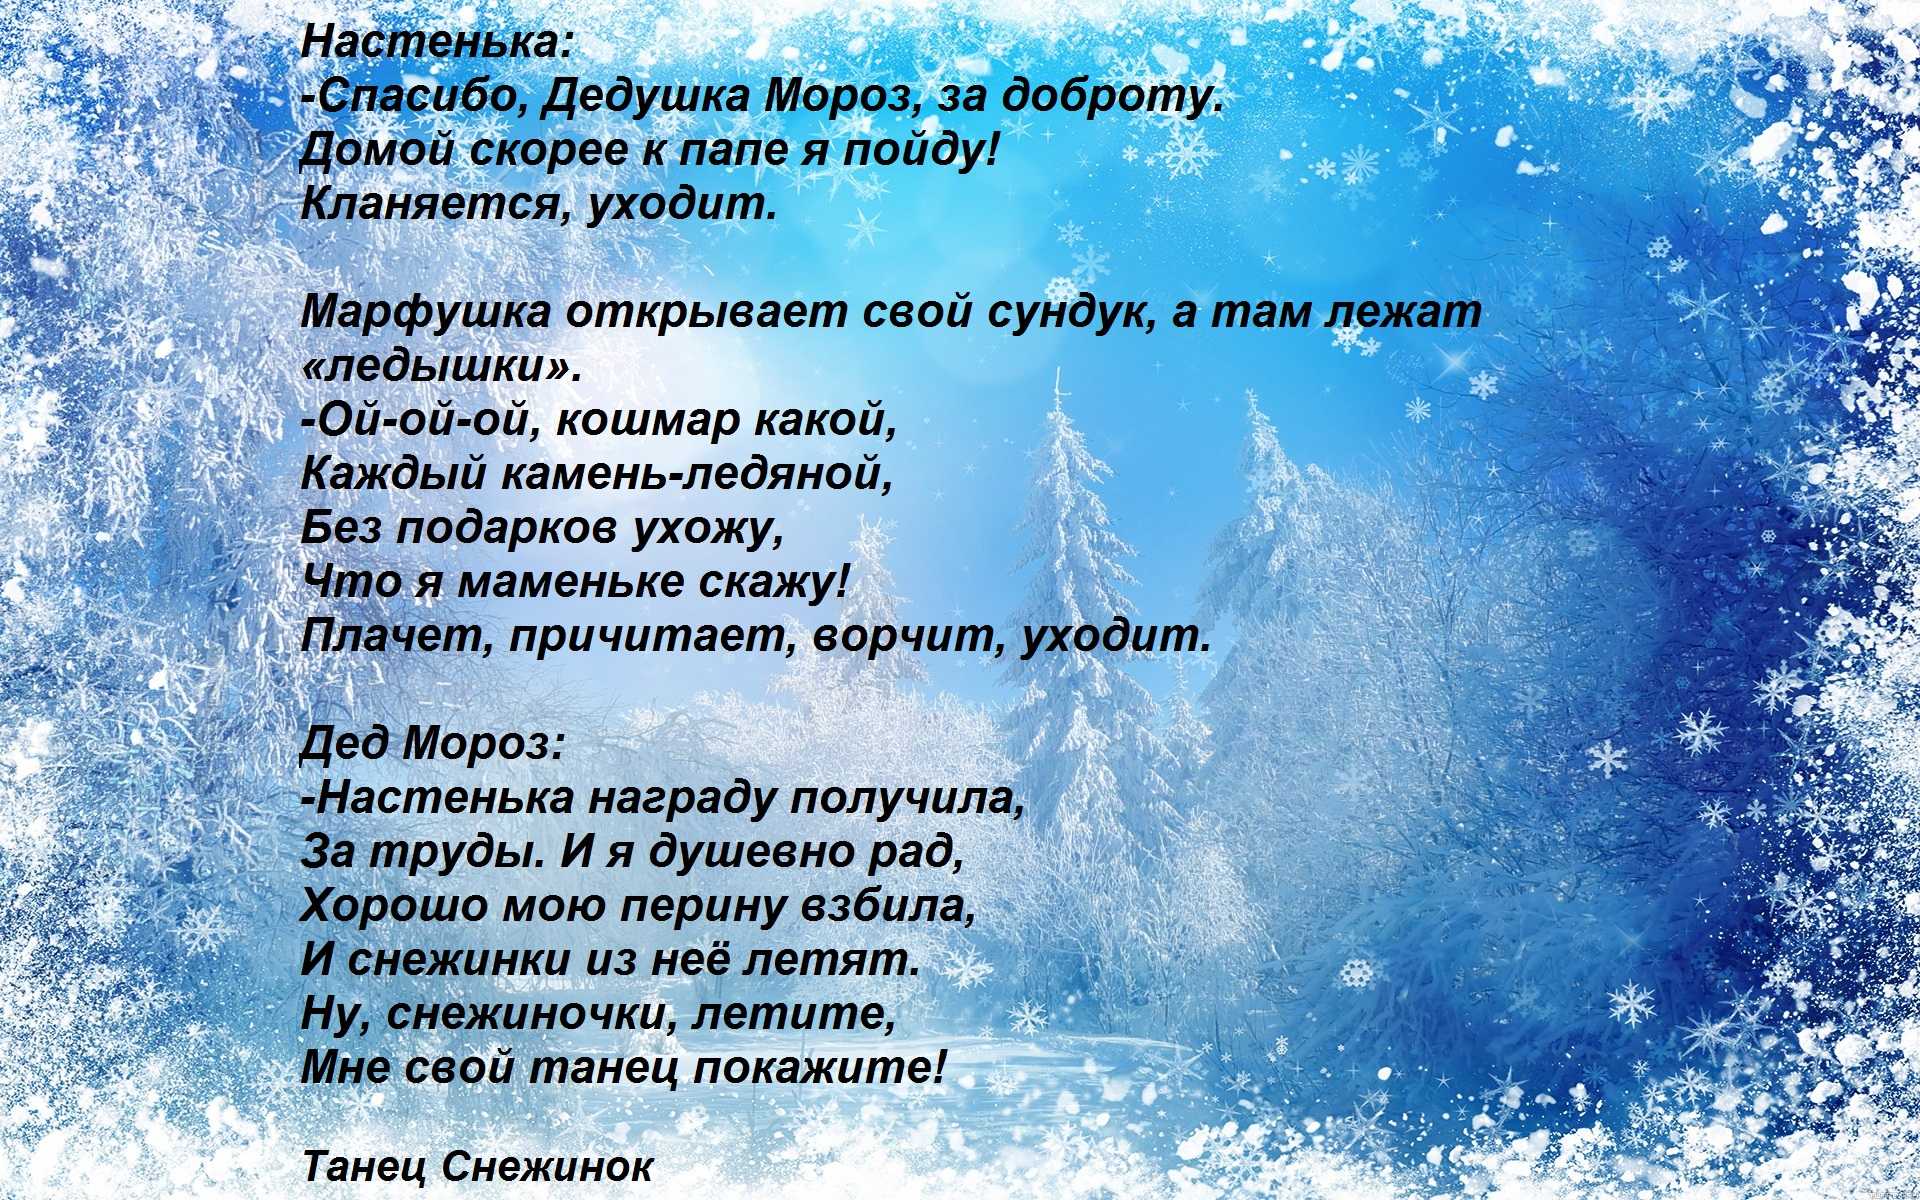 Снежинка - из фильма "чародеи" №131667205 - прослушать музыку бесплатно, быстрый поиск музыки, онлайн радио, cкачать mp3 бесплатно, онлайн mp3 - dydka.net